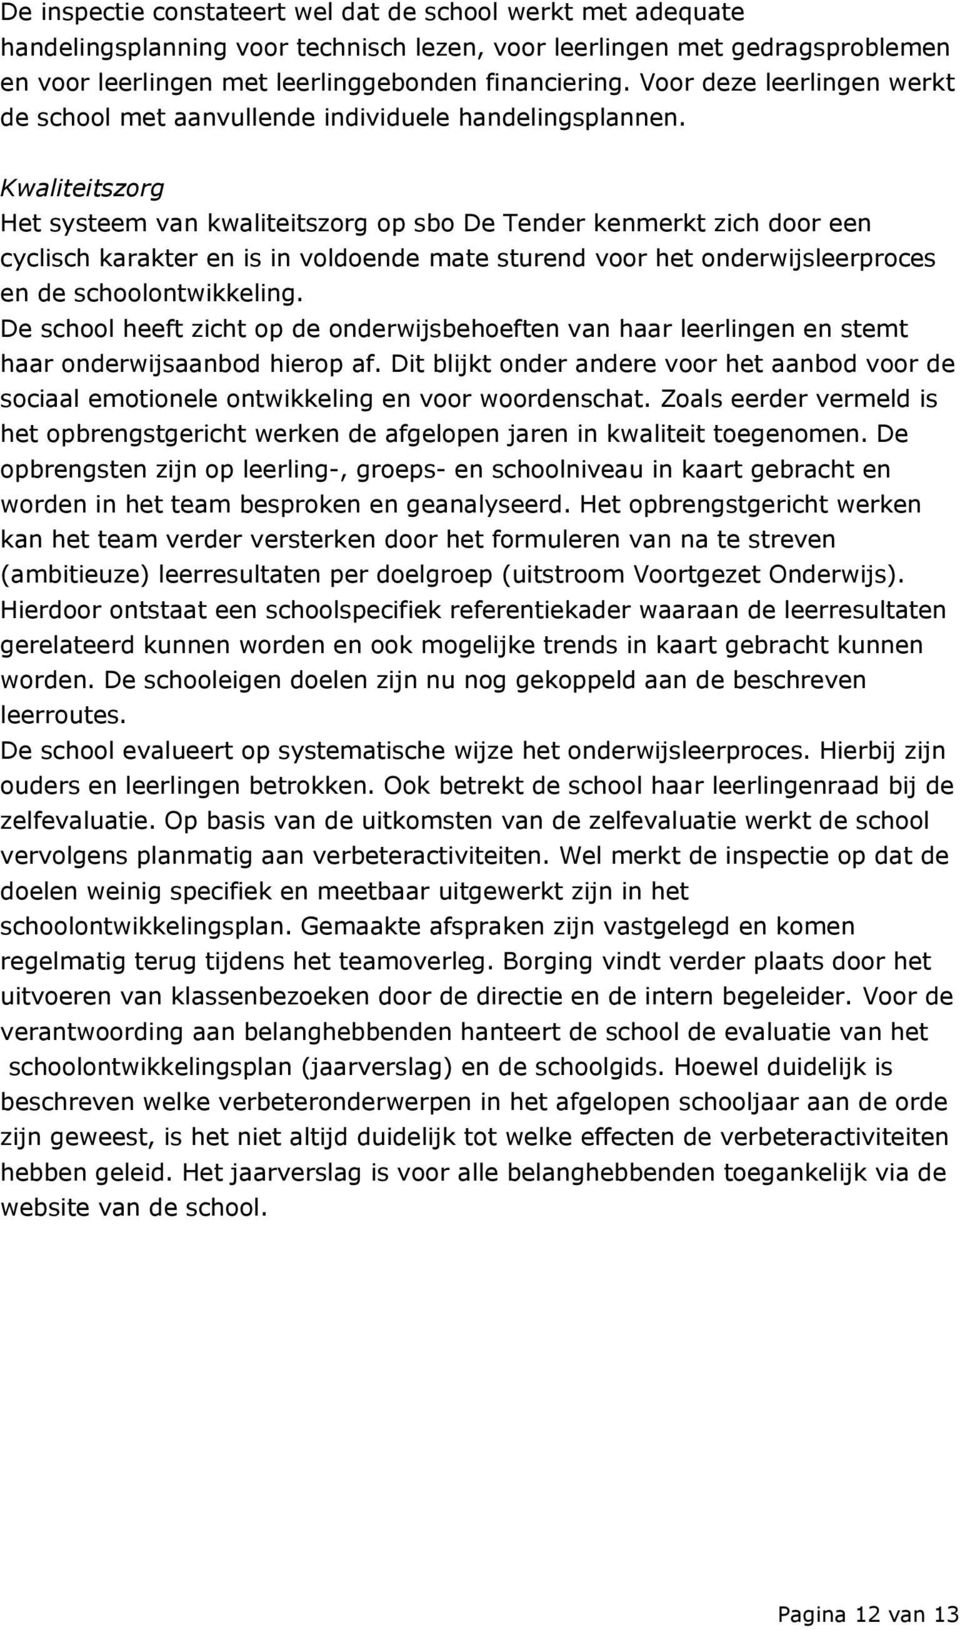 Kwaliteitszorg Het systeem van kwaliteitszorg op sbo De Tender kenmerkt zich door een cyclisch karakter en is in voldoende mate sturend voor het onderwijsleerproces en de schoolontwikkeling.